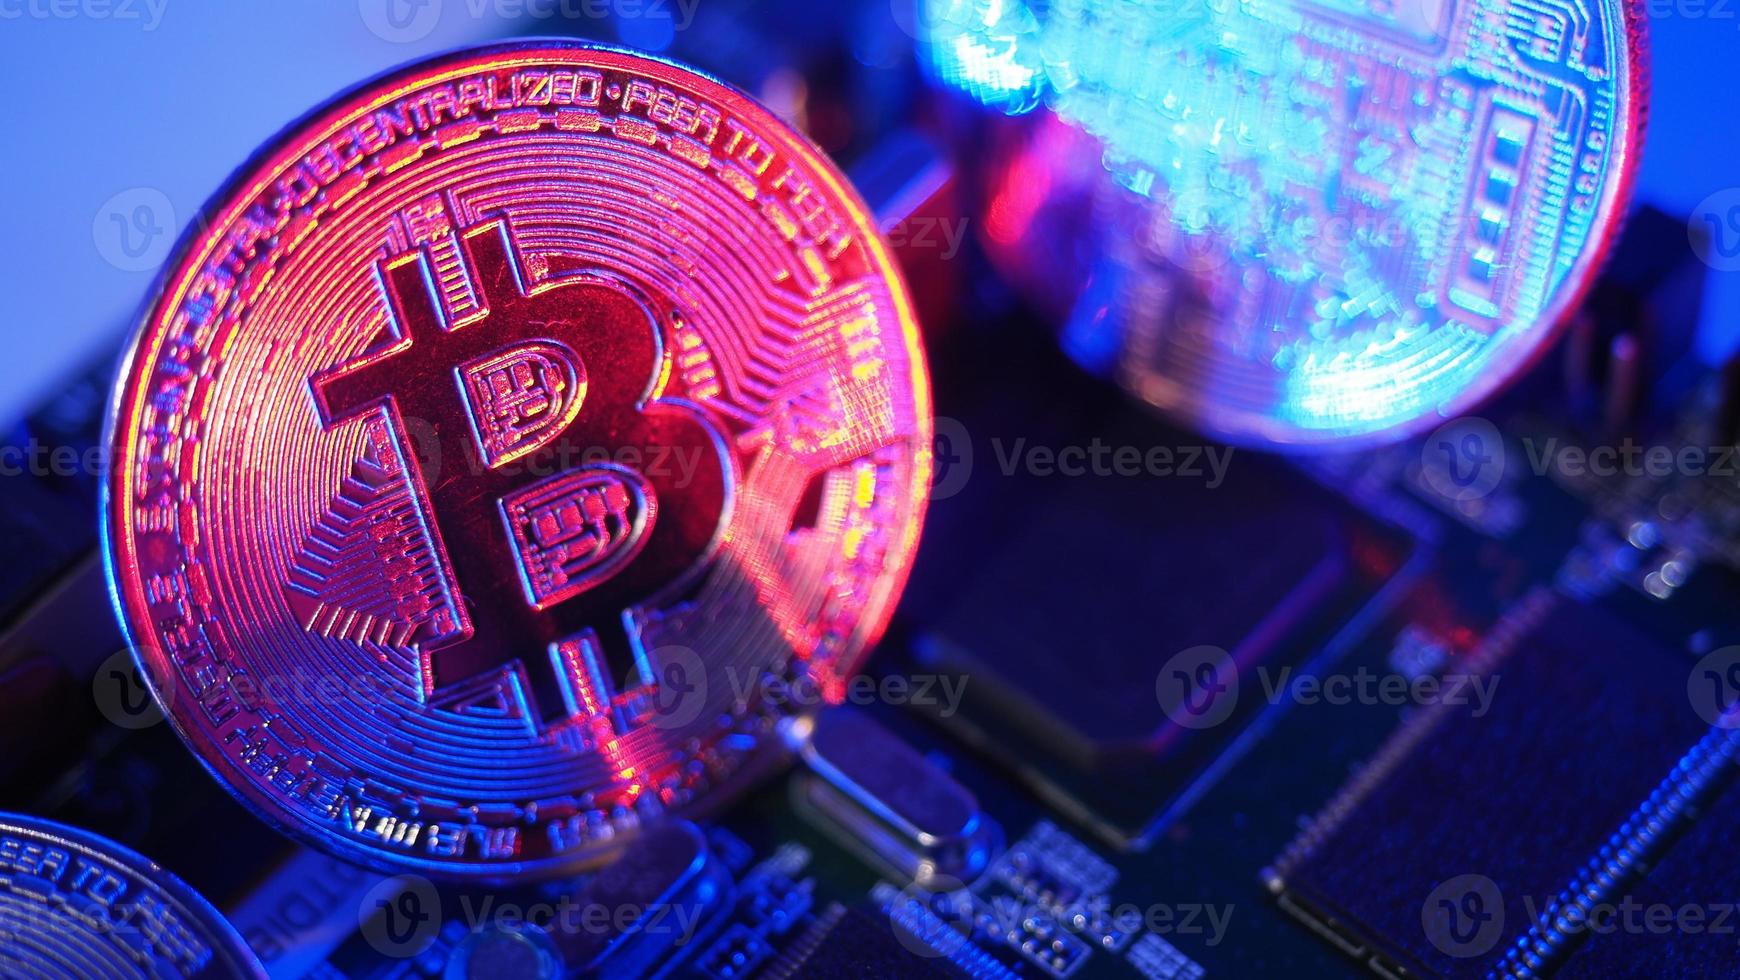 Bitcoin et semi-conducteur. représentent l'exploitation minière dans la crypto-monnaie causent le réchauffement climatique. photo